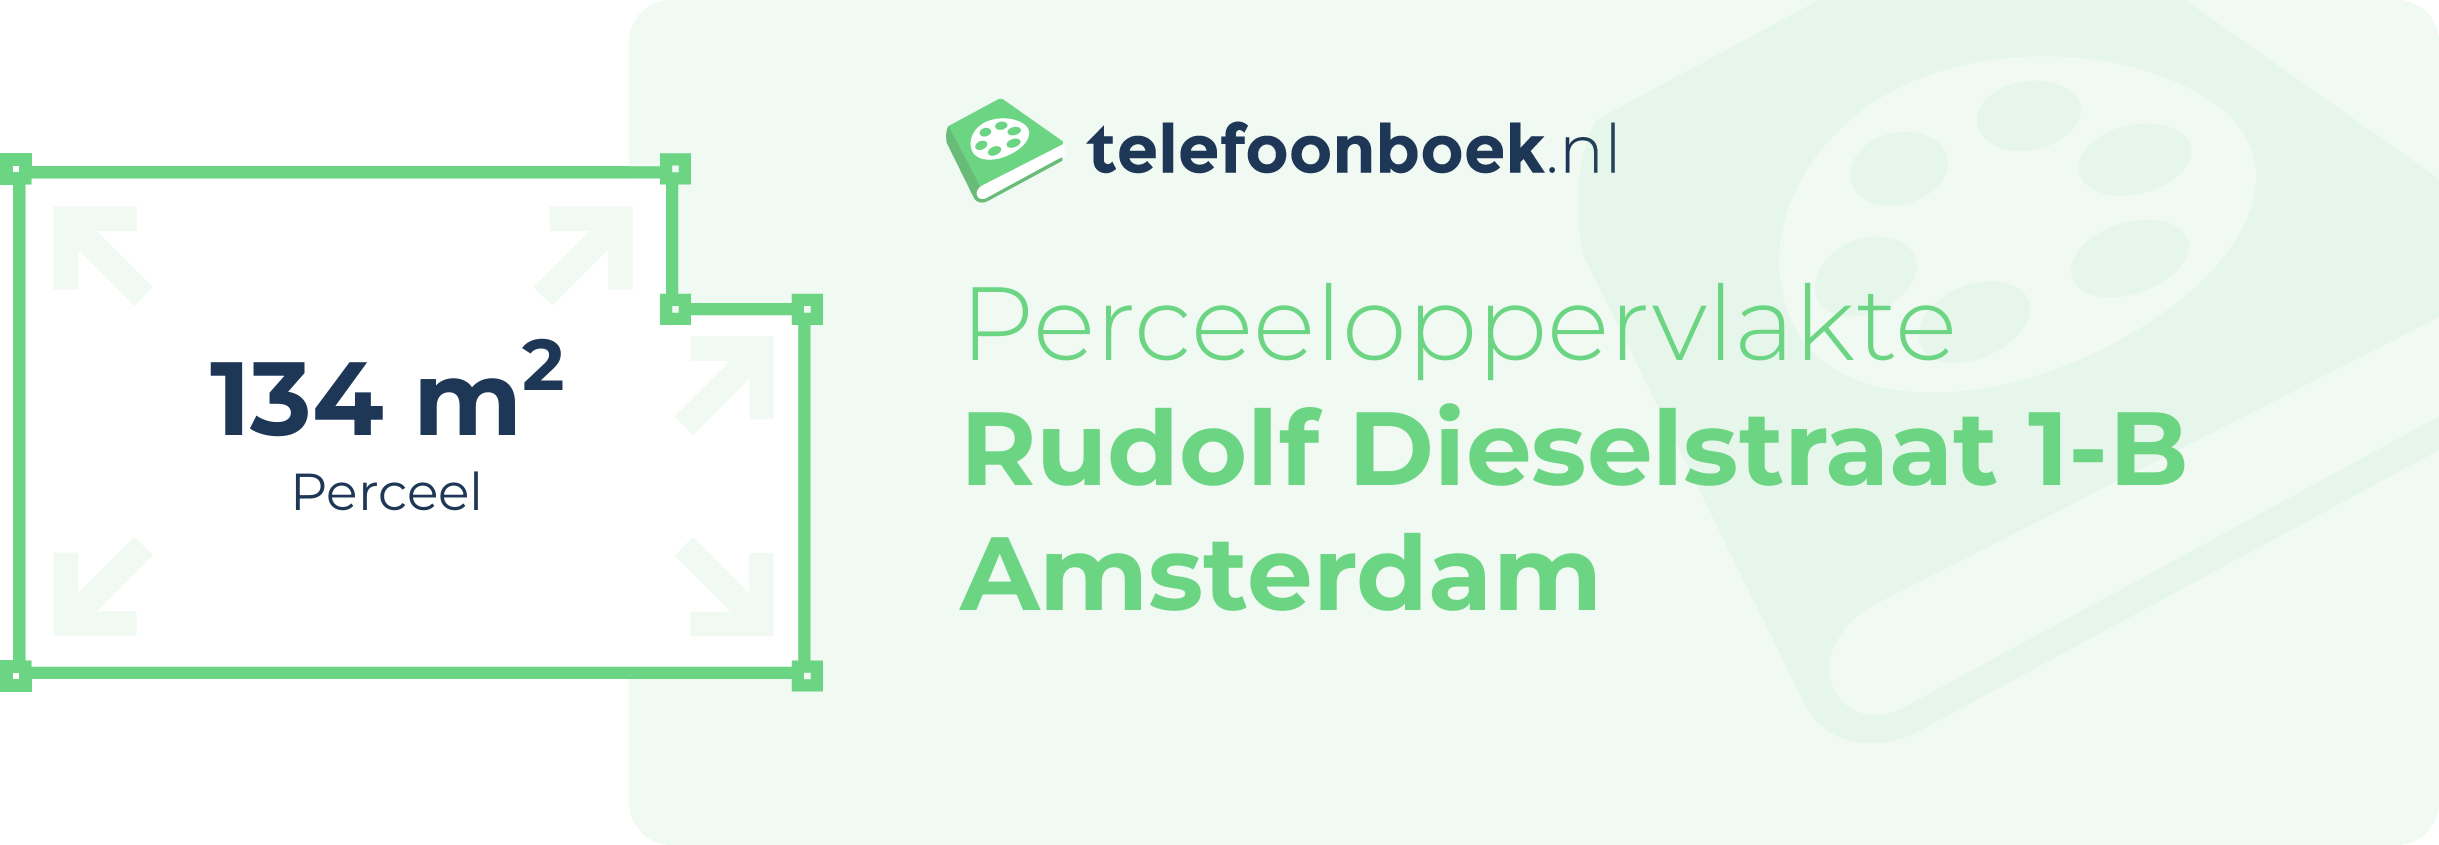 Perceeloppervlakte Rudolf Dieselstraat 1-B Amsterdam